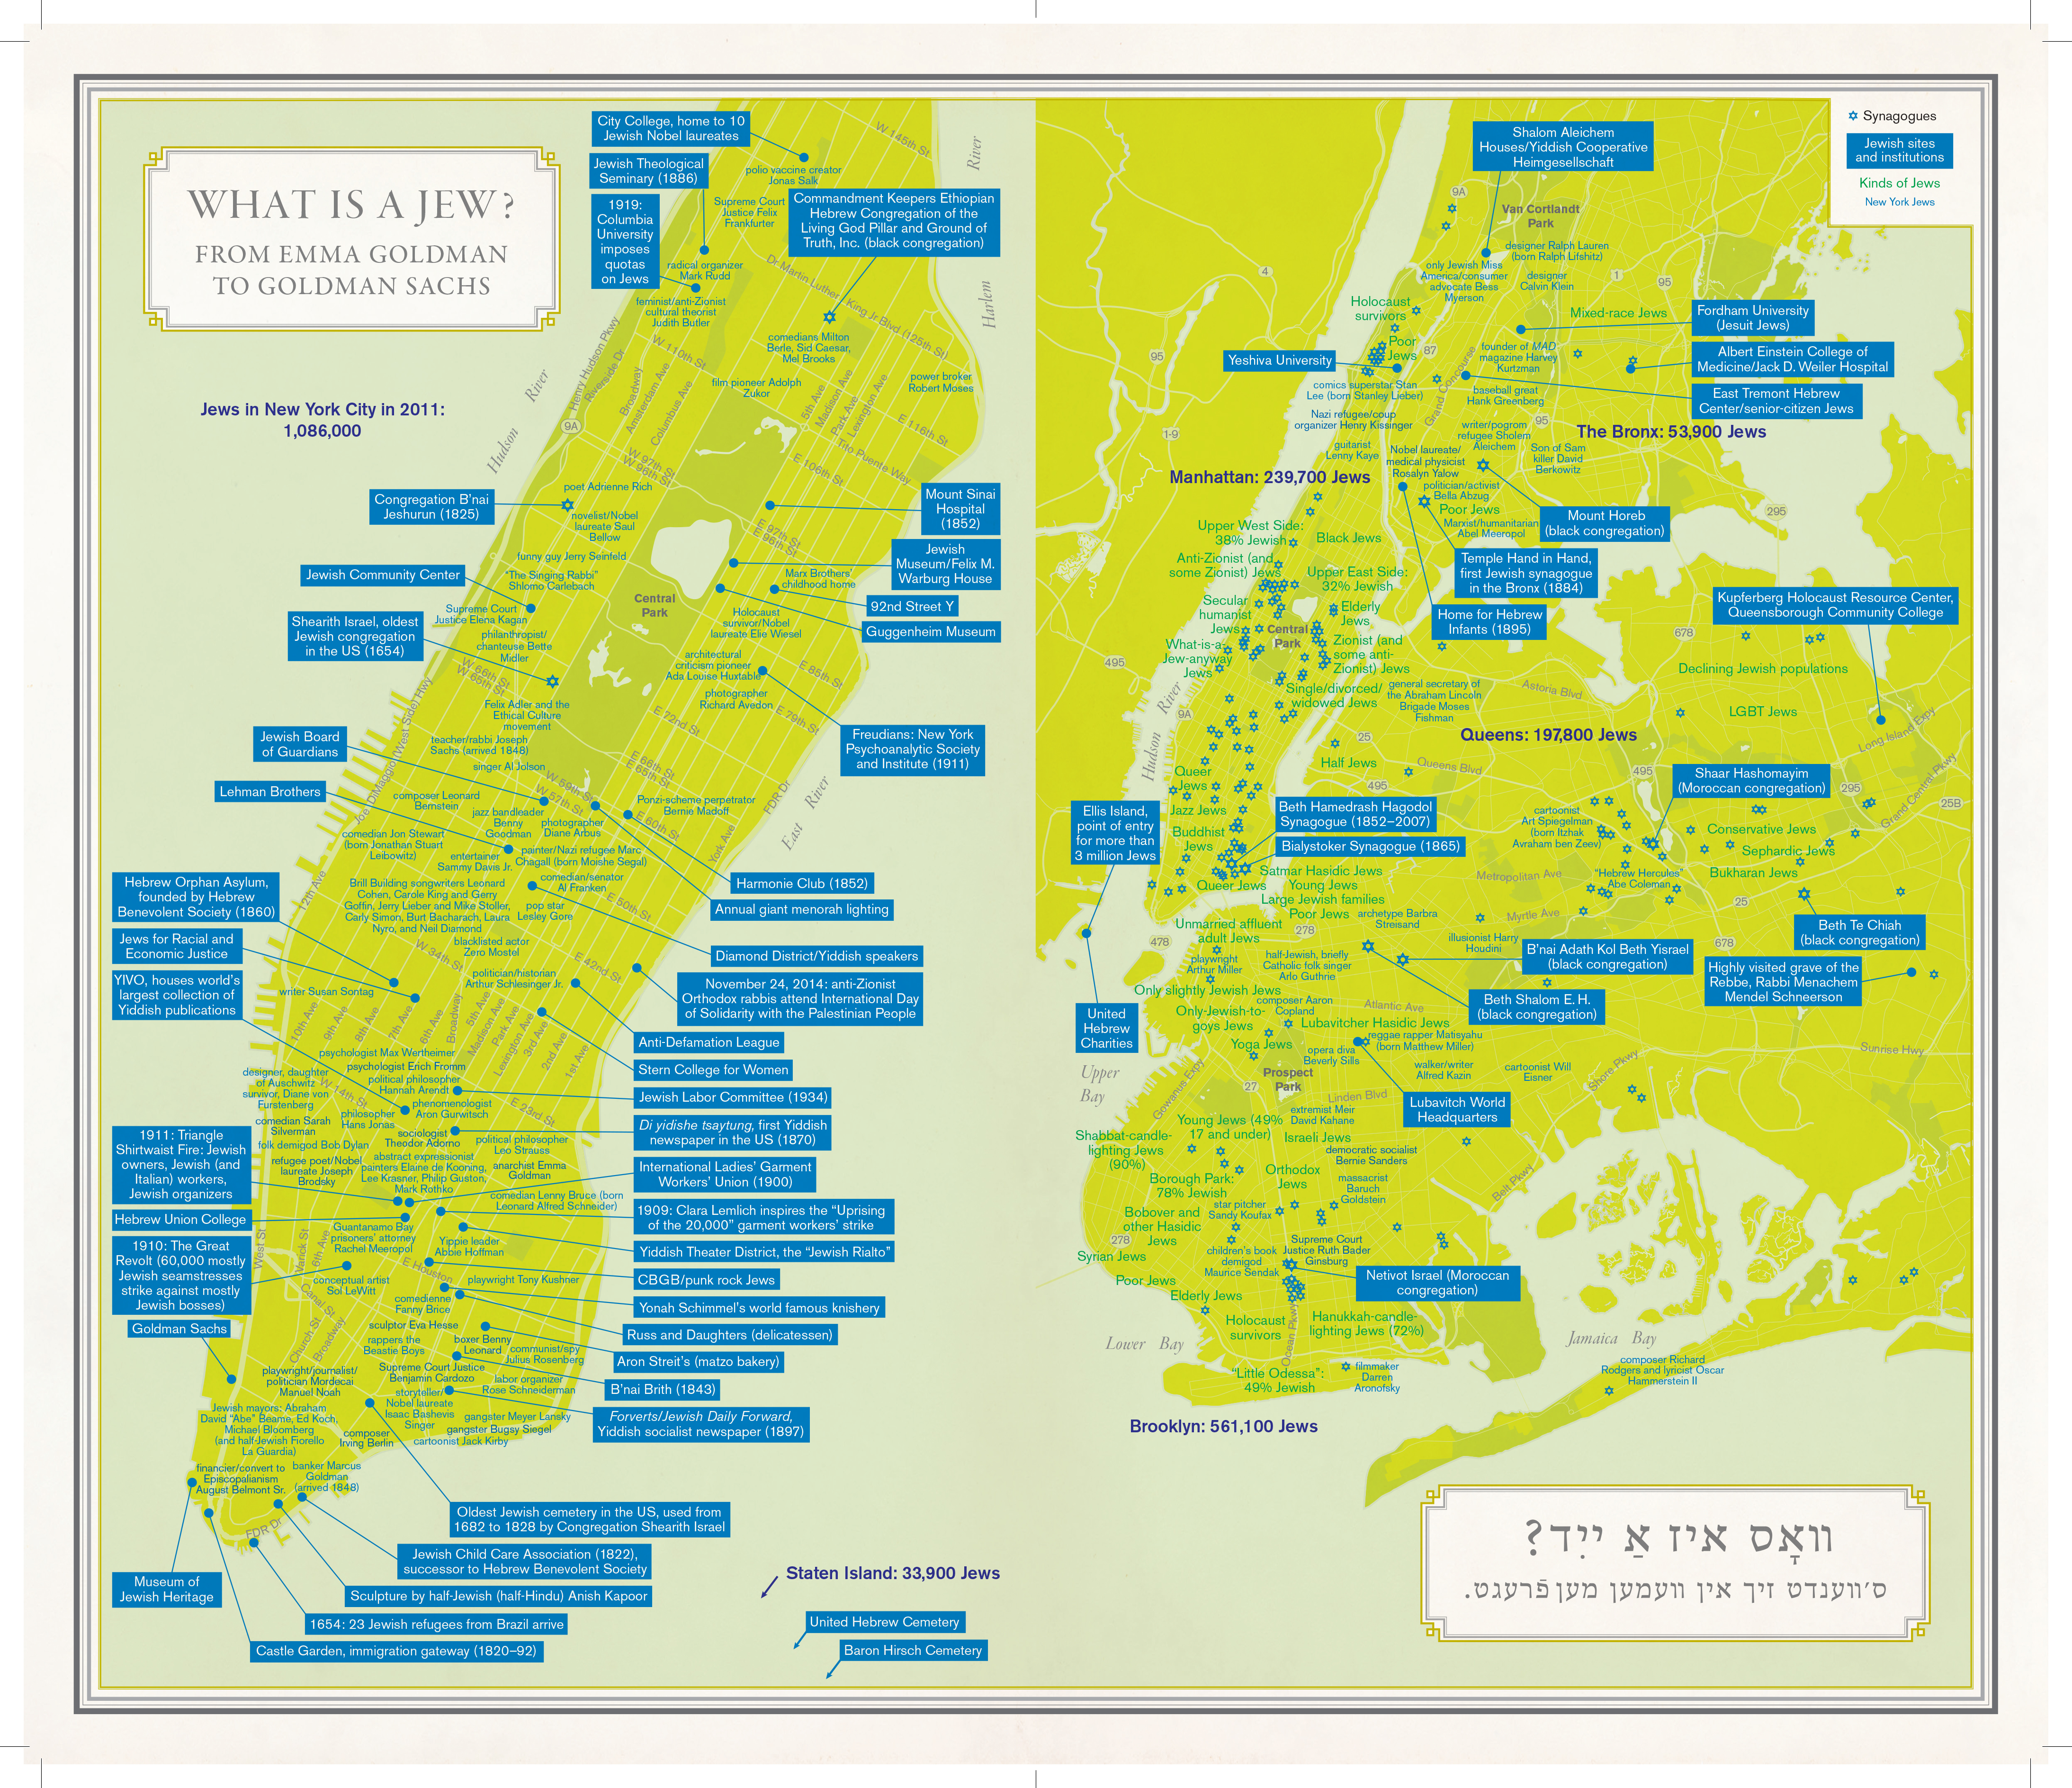 Mapa detalhado da cidade de Nova York.